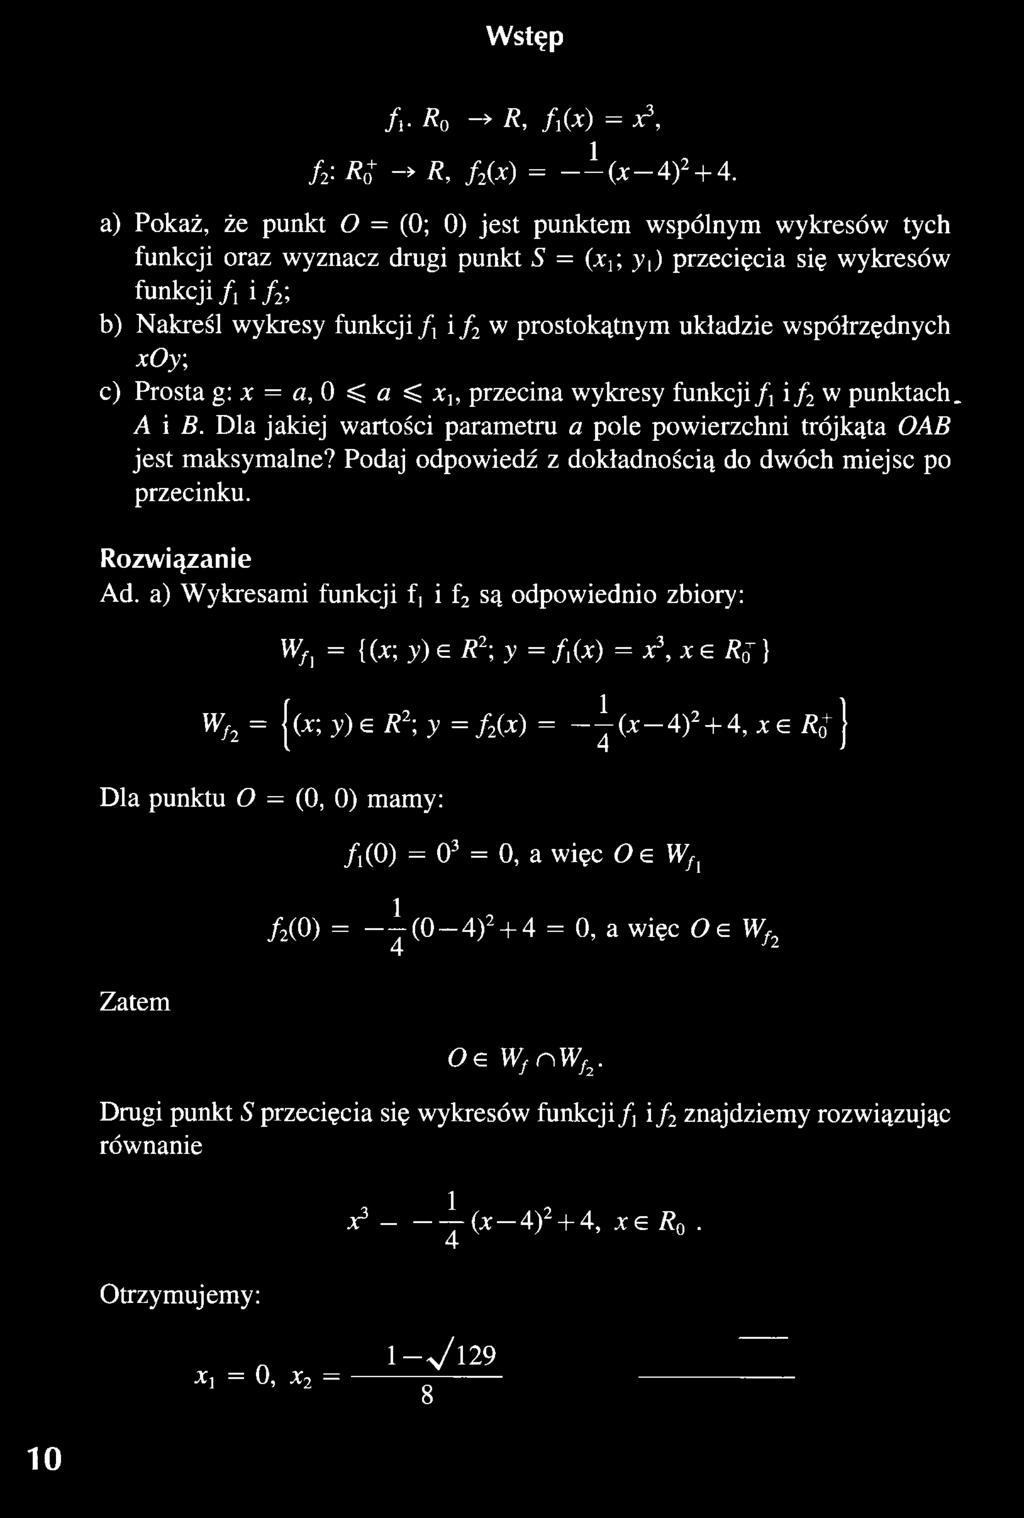 a) Wykresami funkcji f, i f2 są odpowiednio zbiory: wfl = {(*; y) e R2\y = /(*) = *3, * g R{; } Wf2 = (x; y)e R2; y = f2(x) = - ^ - ( x - 4 ) 2 + 4, x e R j Dla